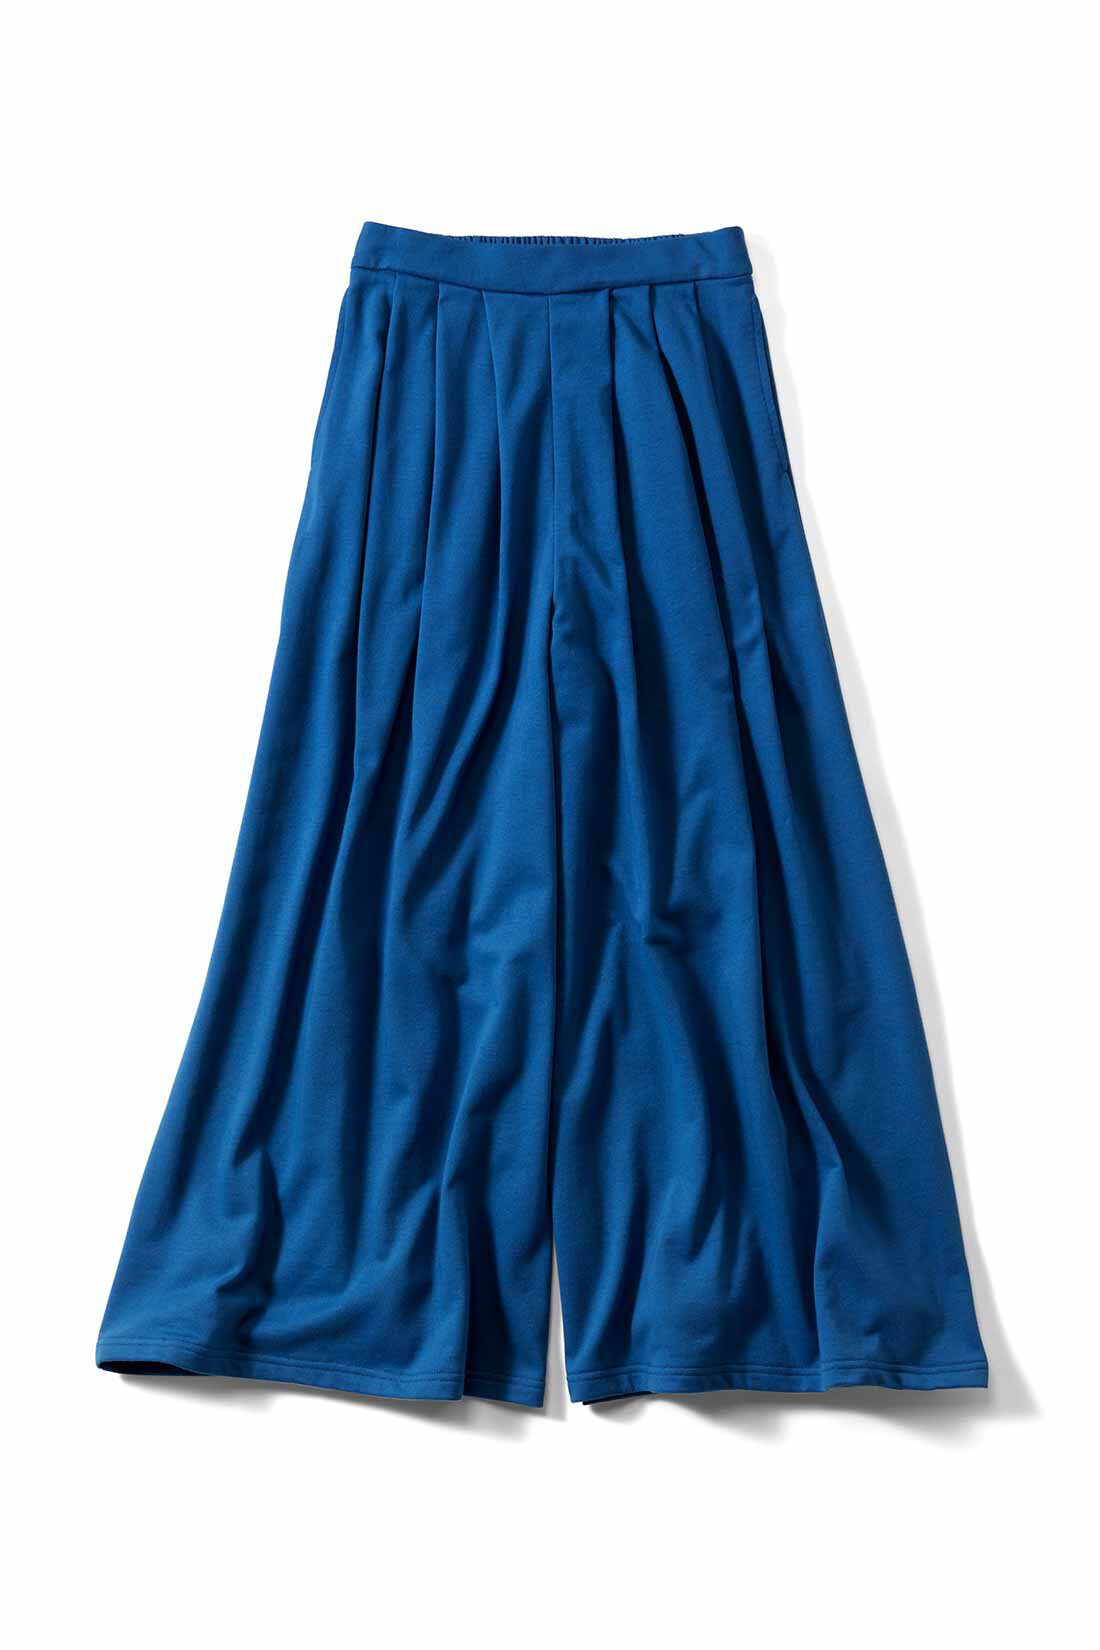 IEDIT|IEDIT[イディット]　ミニ裏毛でやわらか心地いい スカート見えするたっぷりボリュームのスウェットスカンツ|〈ブルー〉